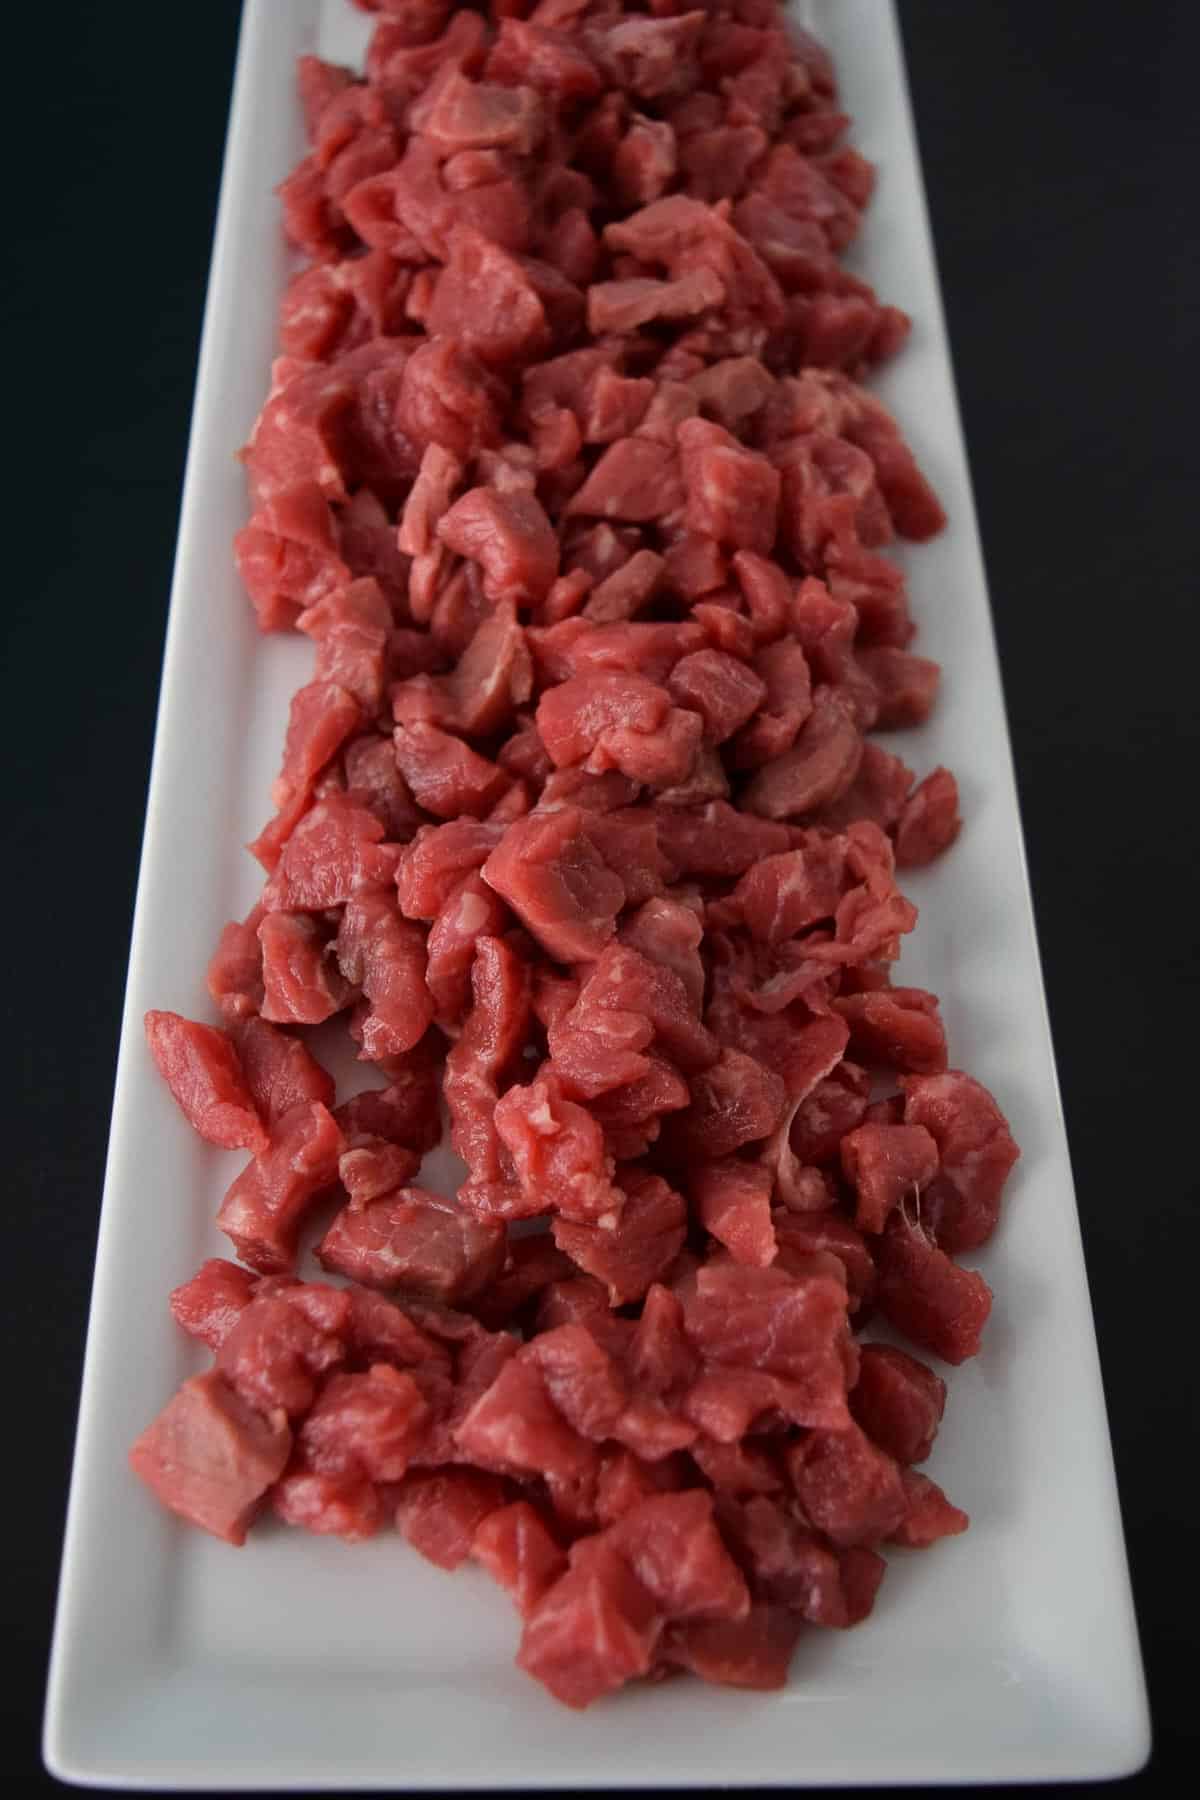 Raw beef stroganoff on white platter